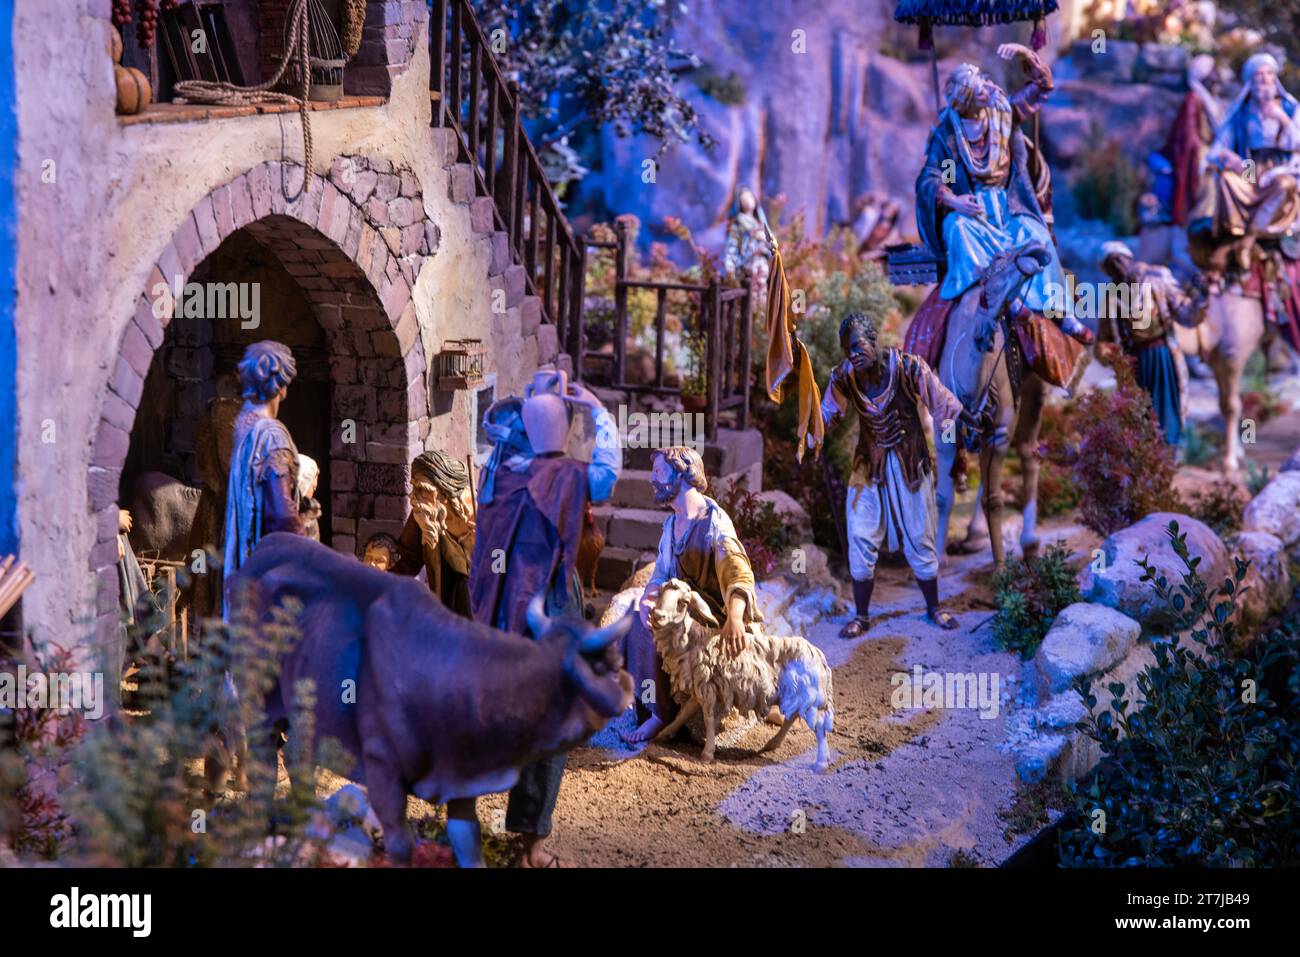 Handgefertigte Pracht: Eine exquisite handwerkliche Krippe, die komplizierte Details in den Figuren und Tieren enthüllt, die die Geschichte von Bethlehem zum Leben erwecken Stockfoto